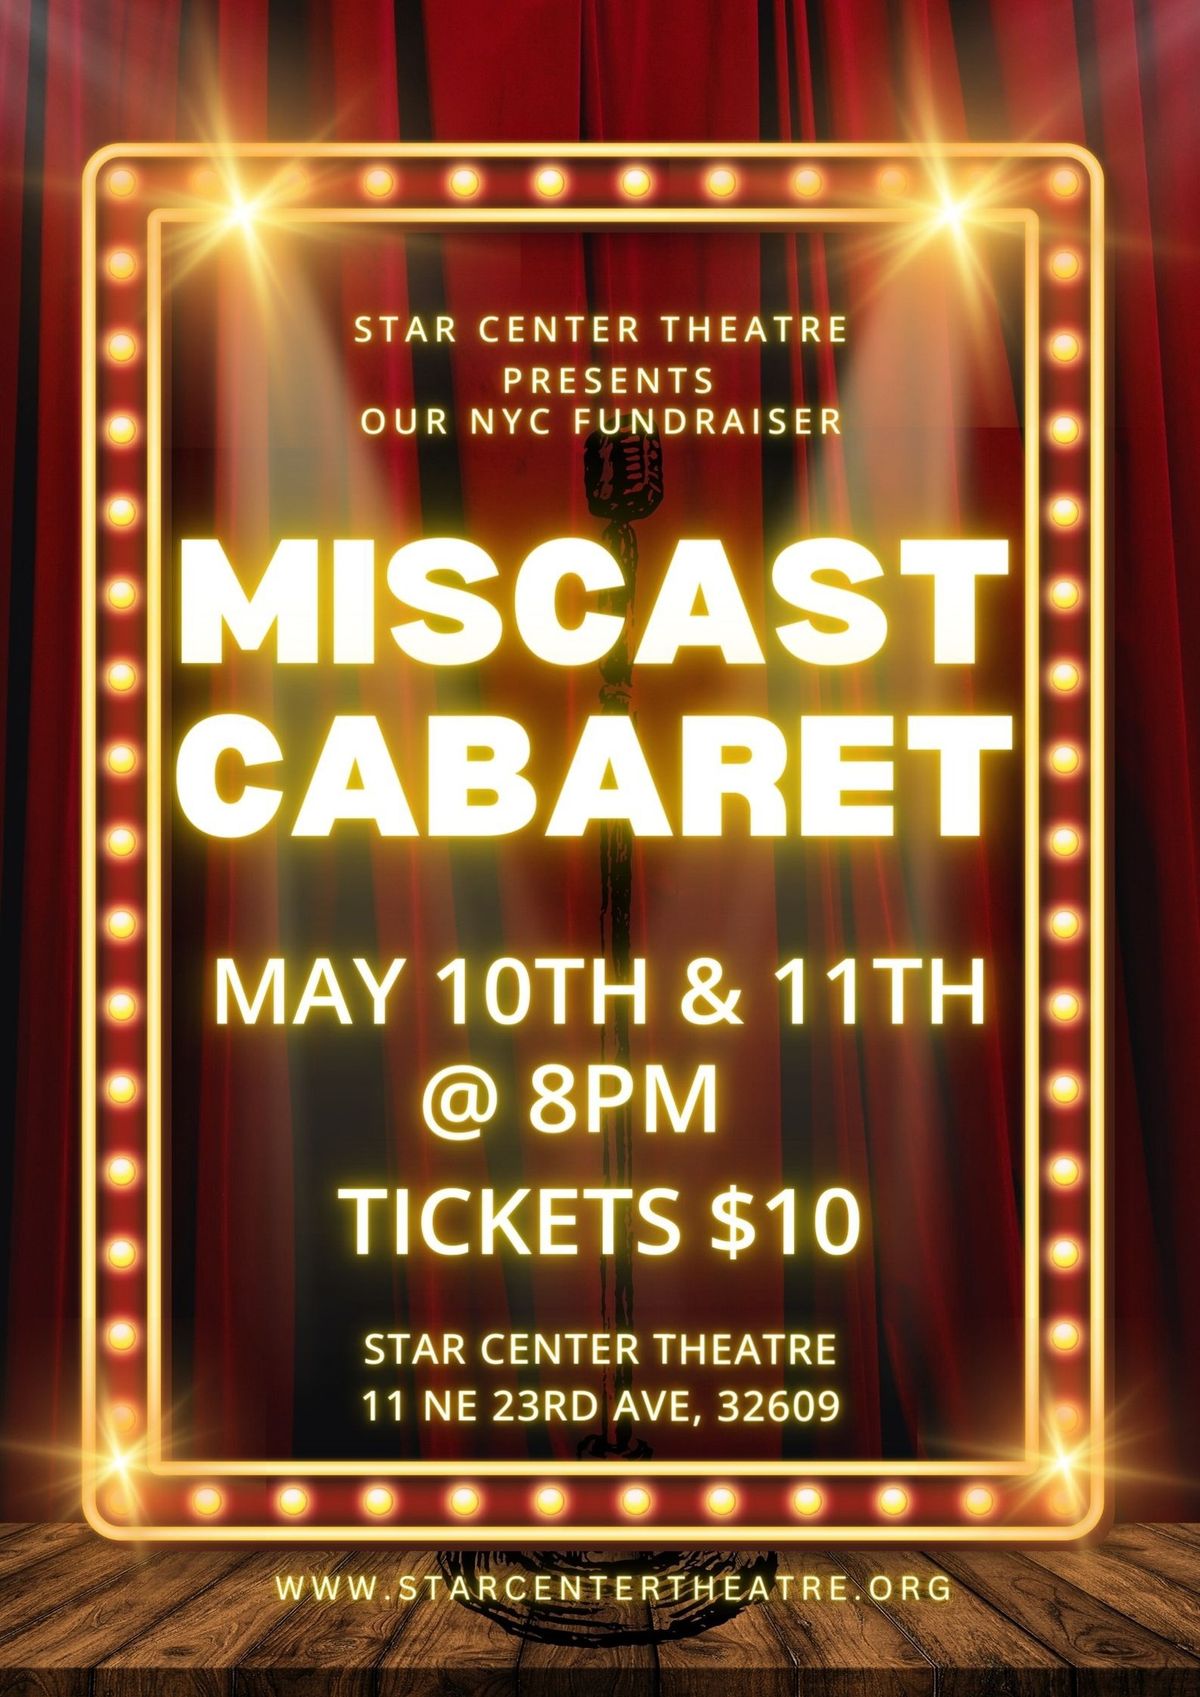 Miscast Cabaret Fundraiser